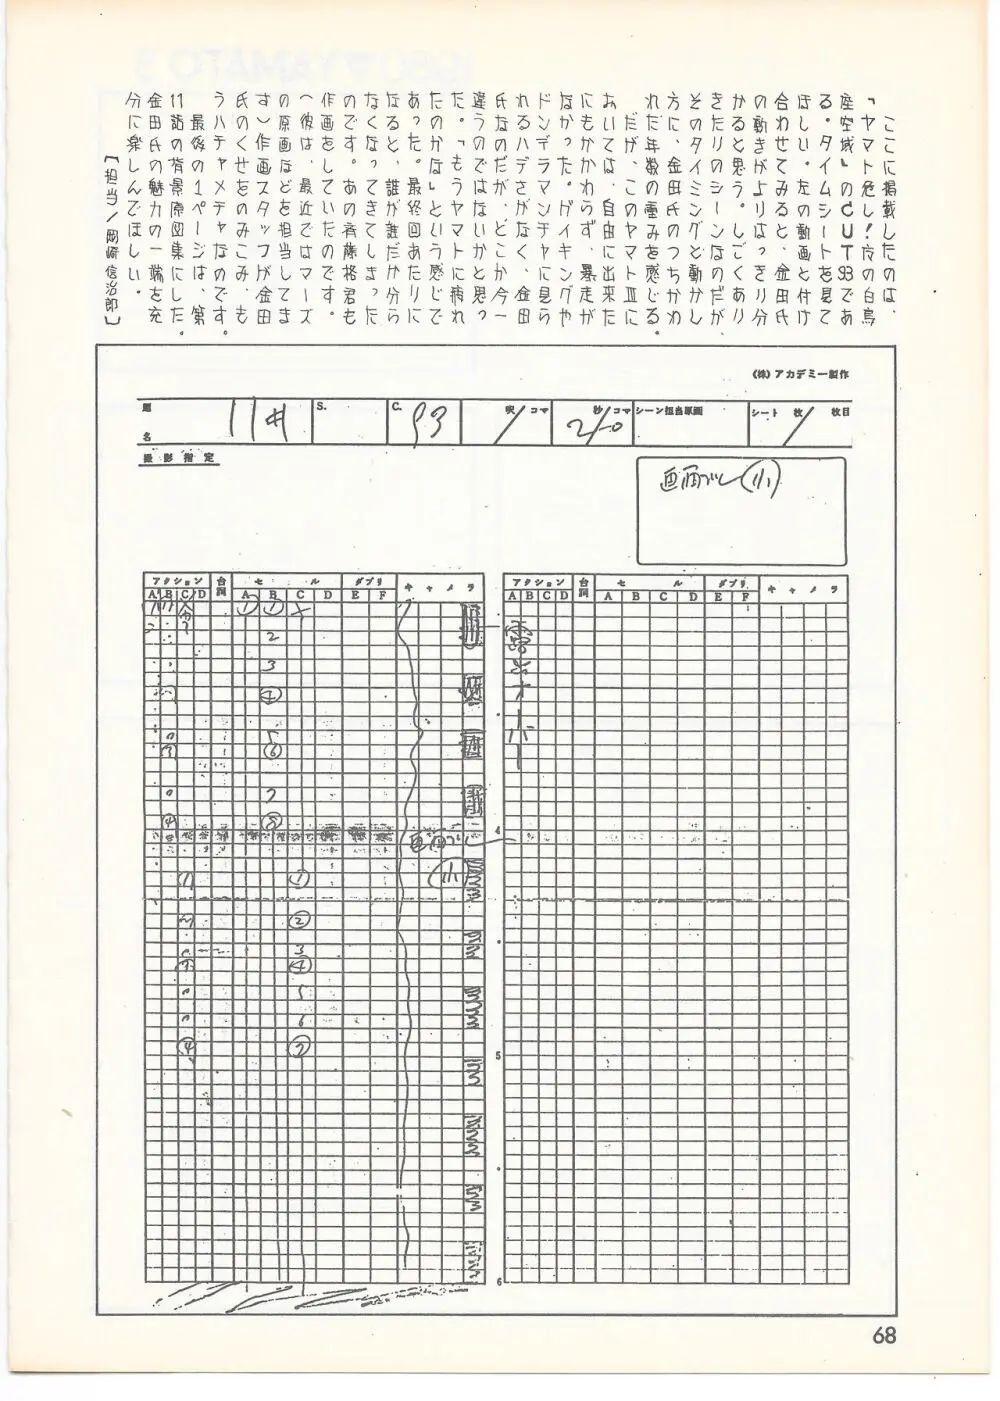 THE ANIMATOR 1 金田伊功特集号 65ページ